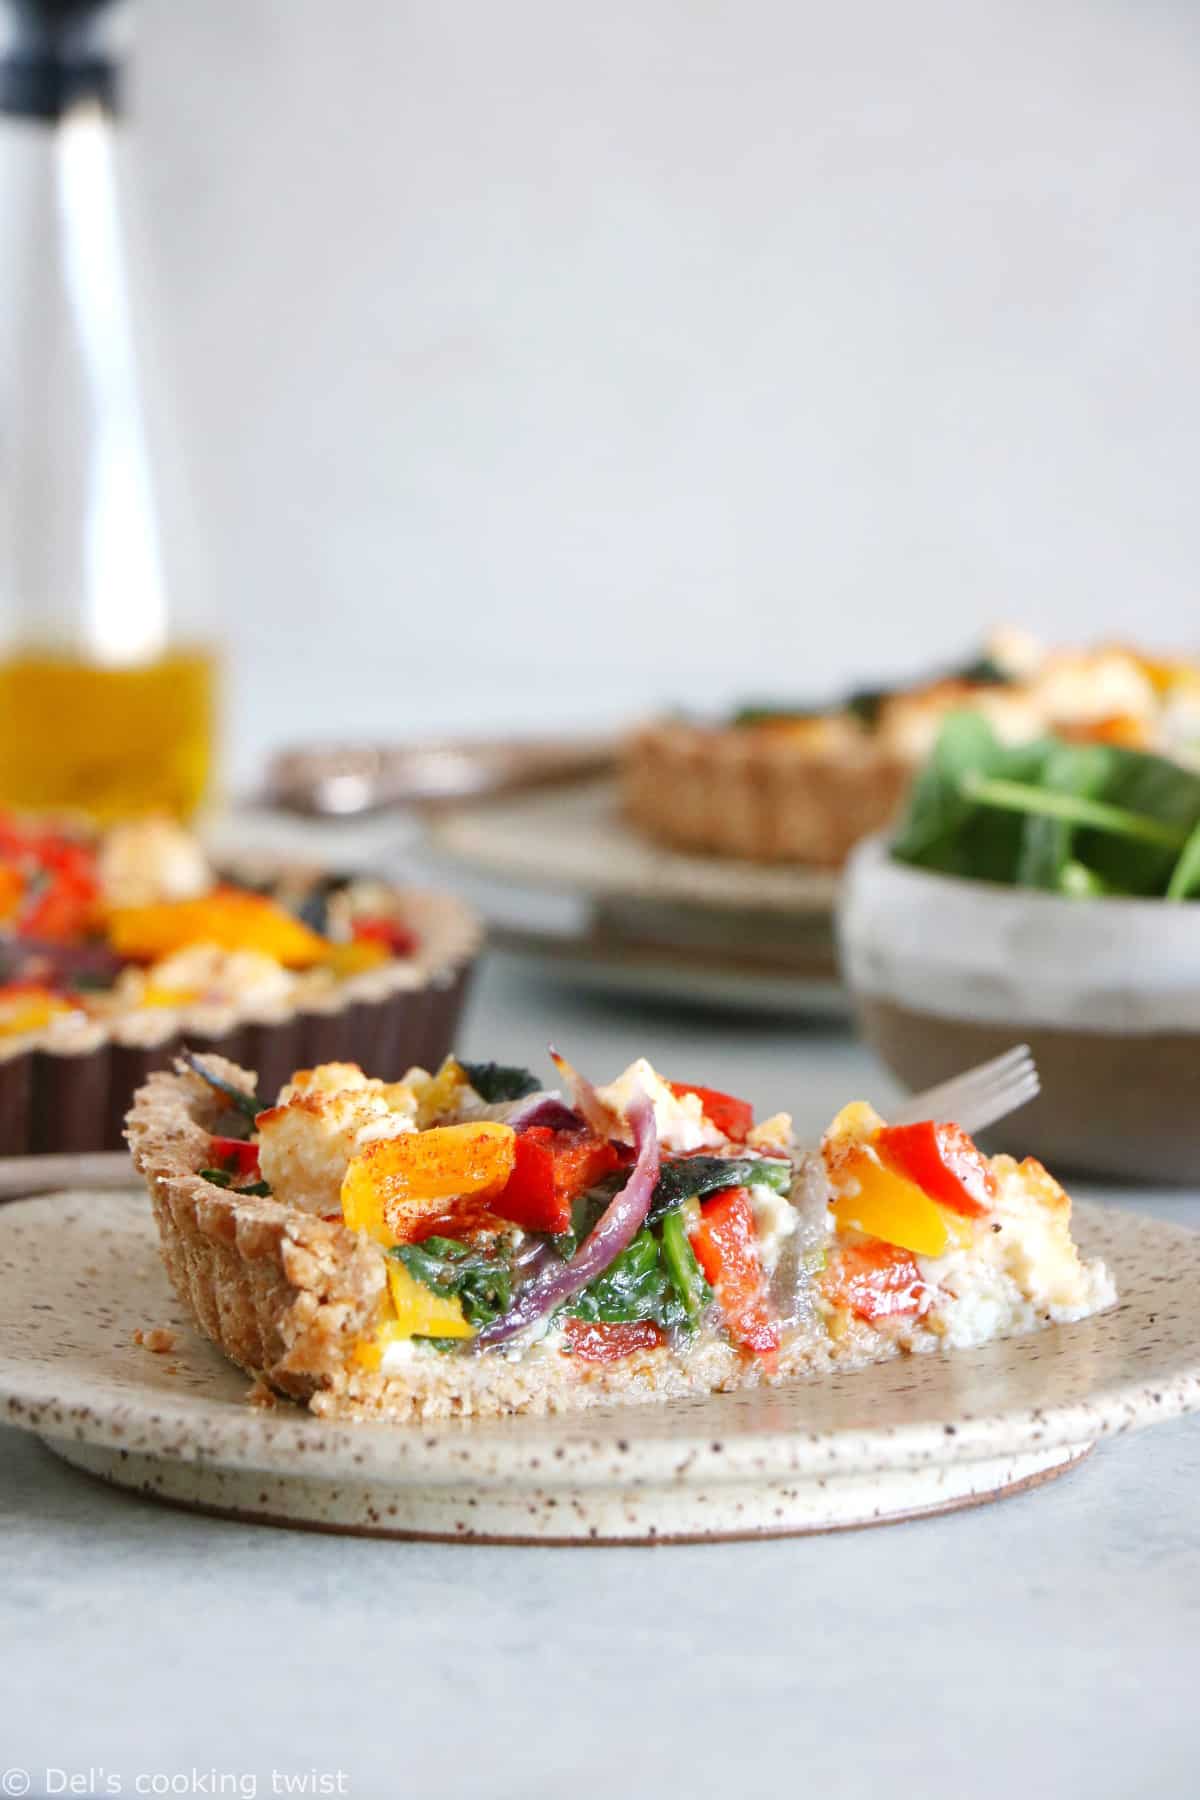 L’été s’invite dans notre assiette avec cette quiche aux légumes du soleil et à la feta qui met à l’honneur des saveurs colorées sur fond de pâte la farine complète et à l’huile d’olive.